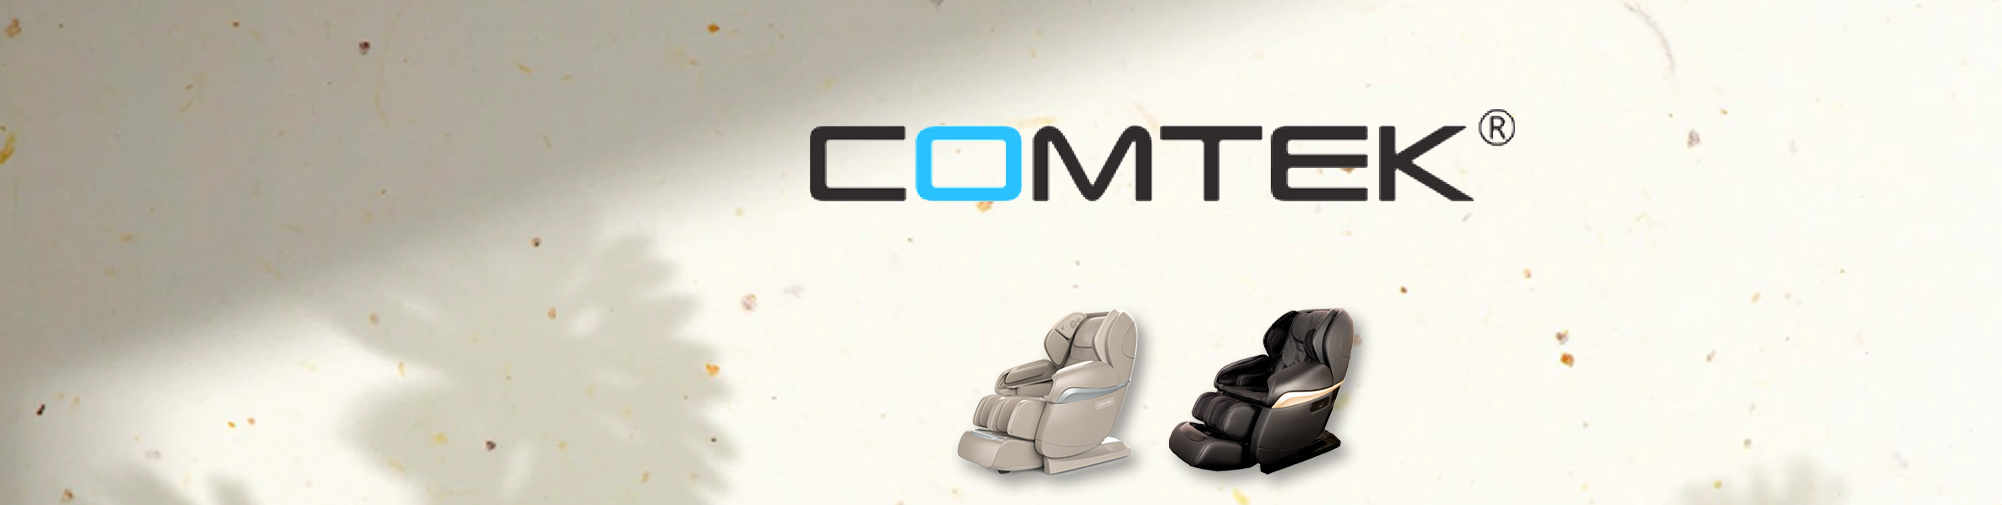 COMTEK - 전문 오리지널 프로듀서 | 마사지 의자 세계